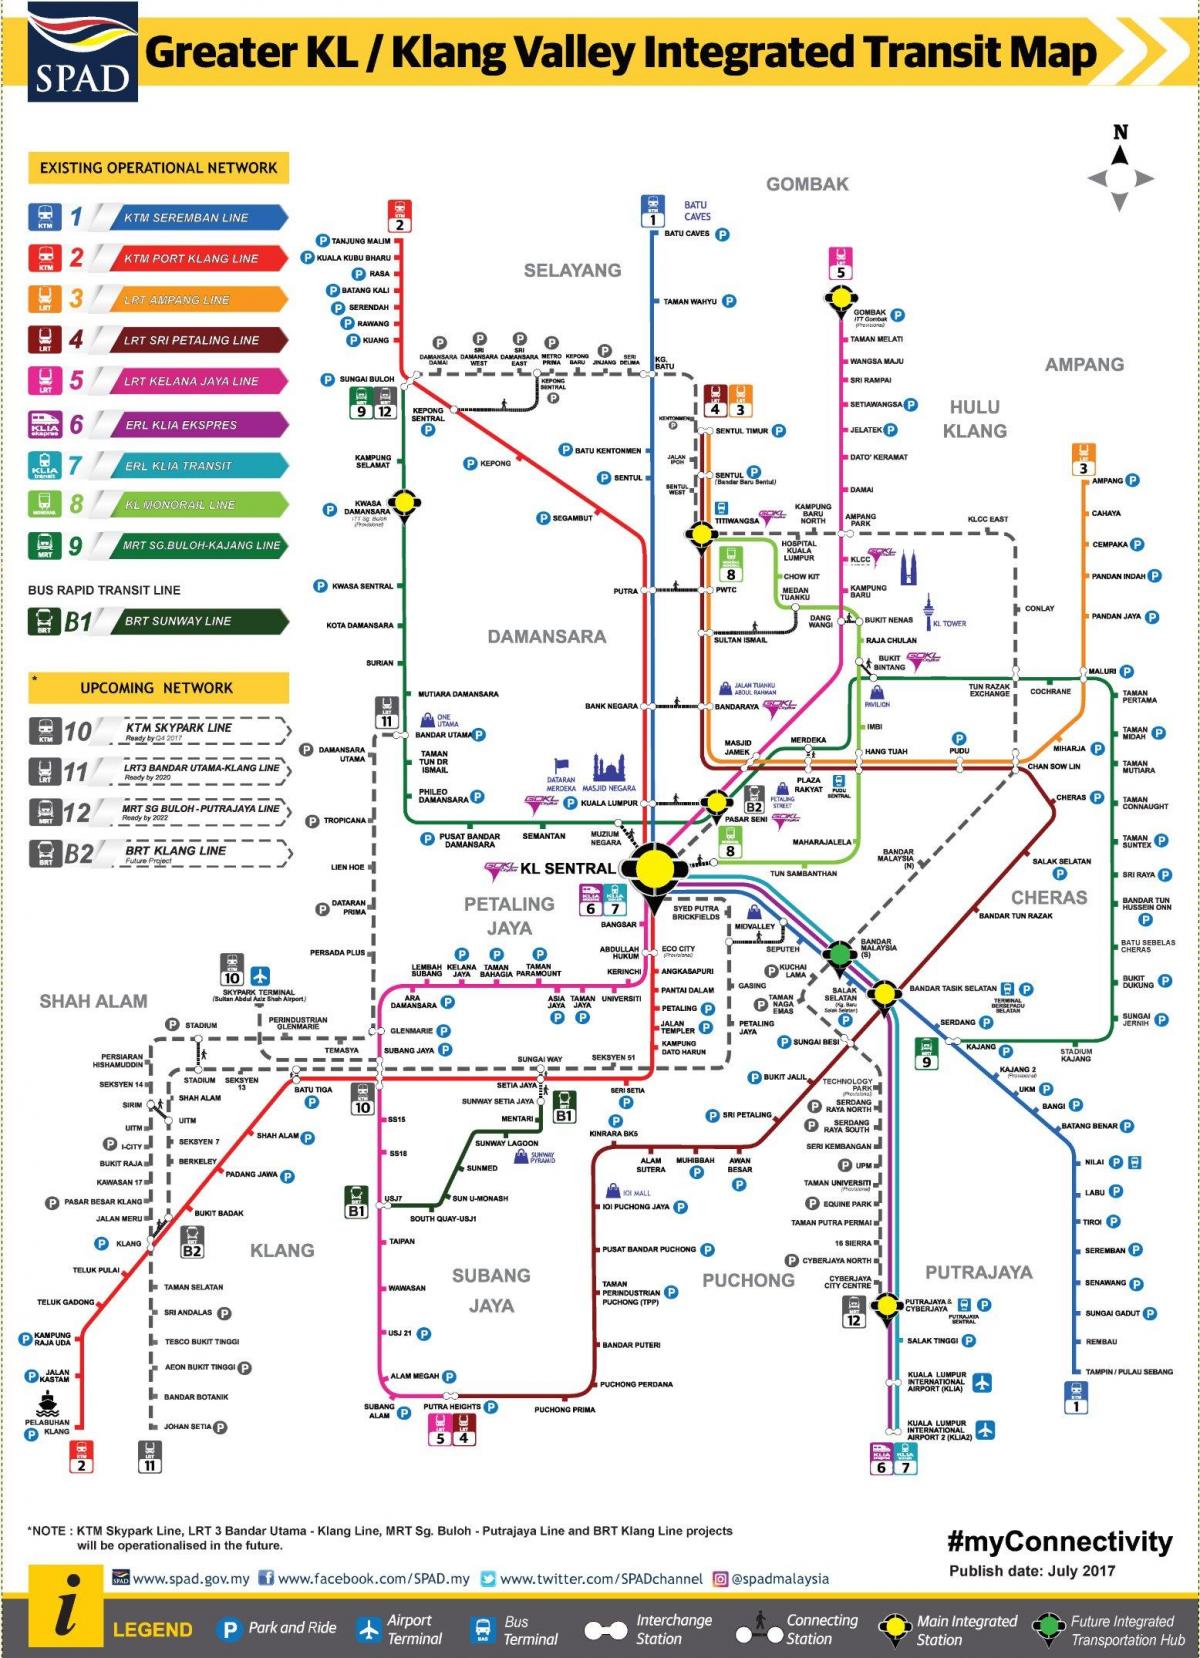 Kuala Lumpur (KL) subway station map